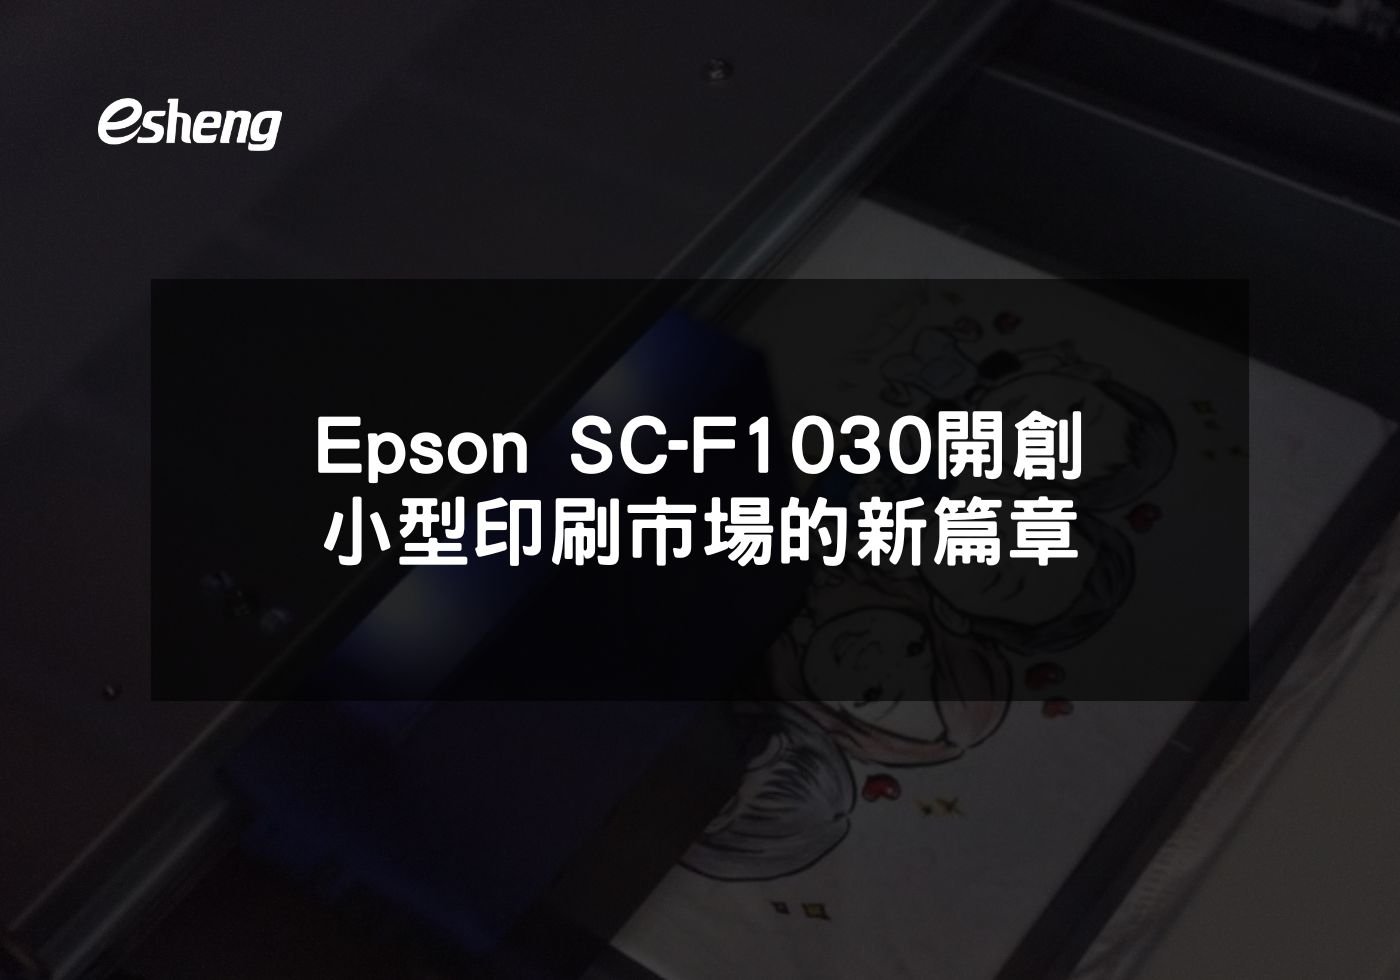 閱讀更多文章 Epson SC-F1030開創小型印刷市場的新篇章